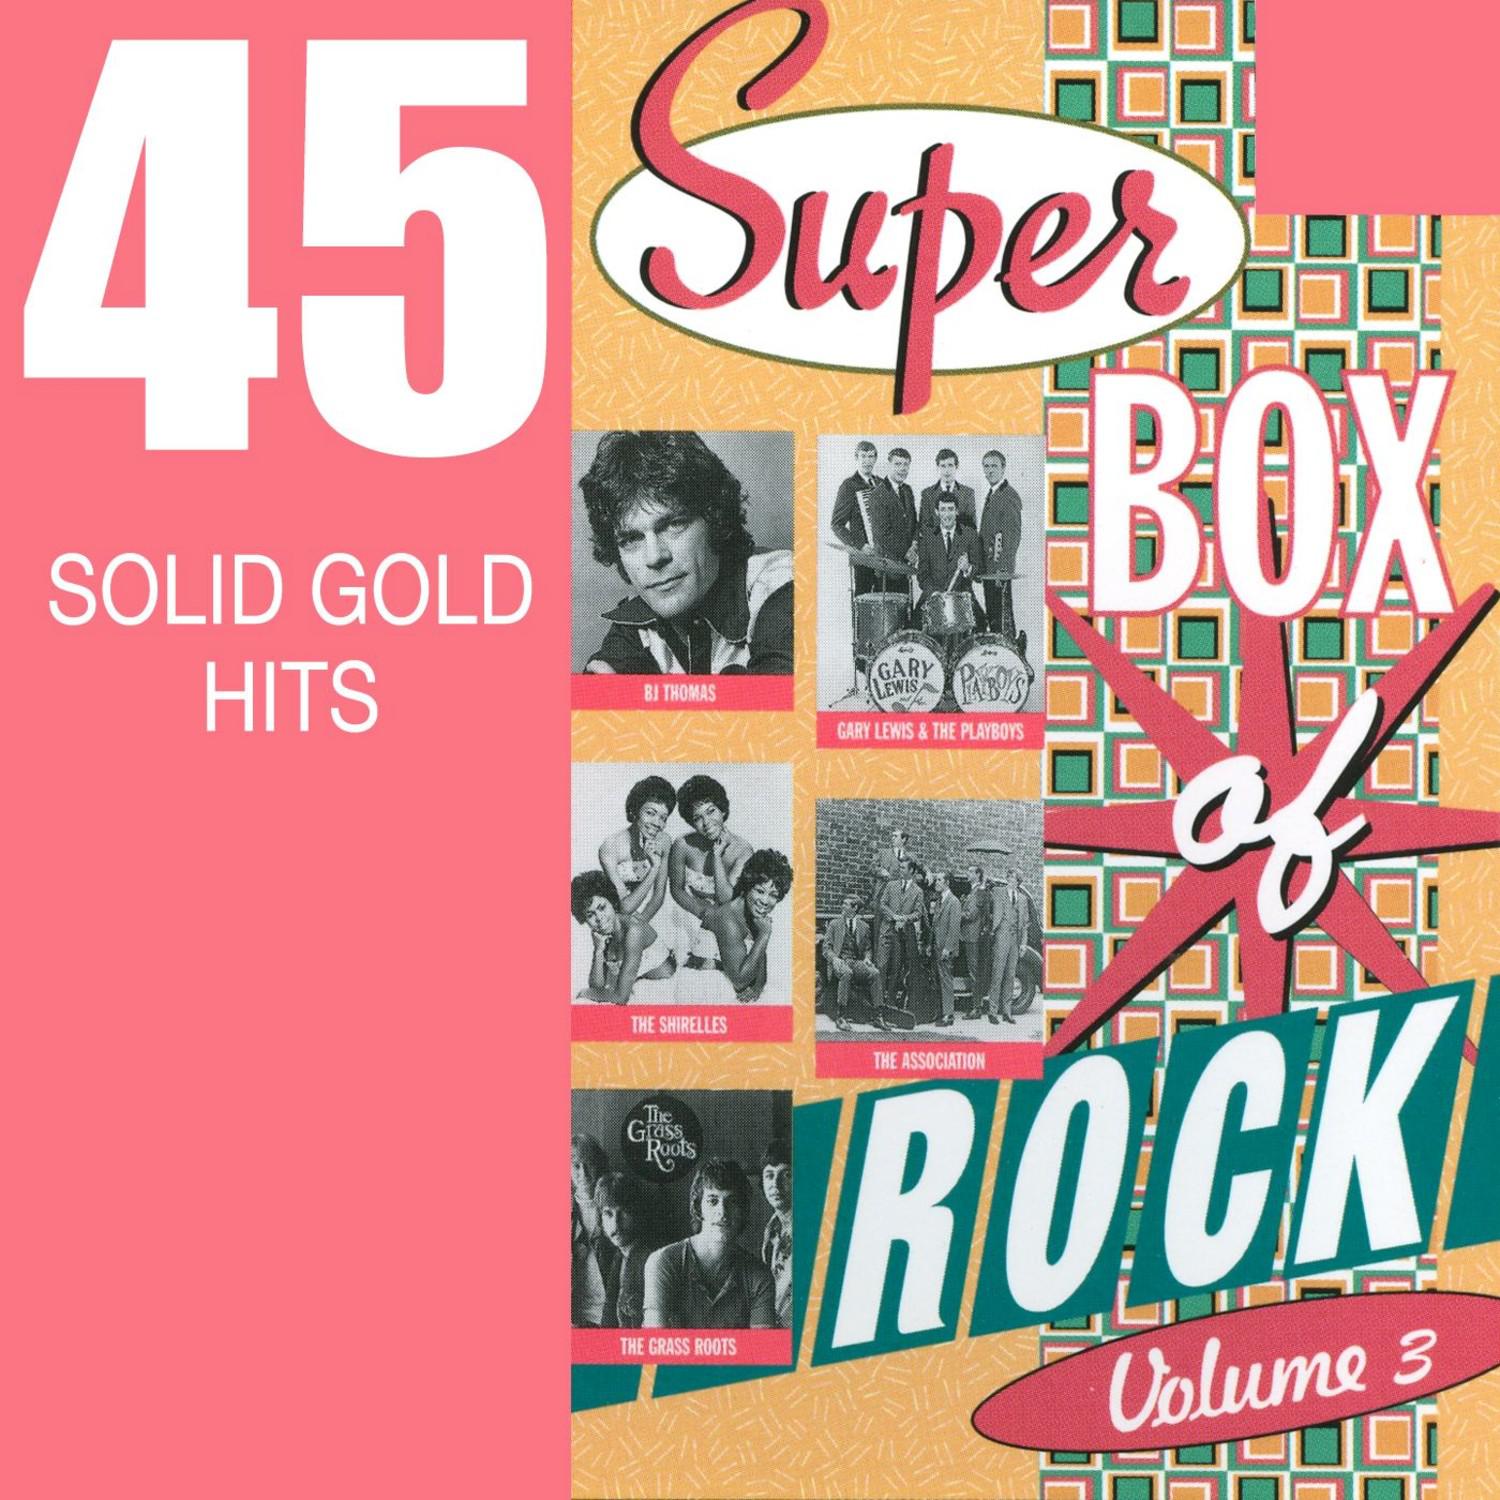 Super Box Of Rock - Vol. 3